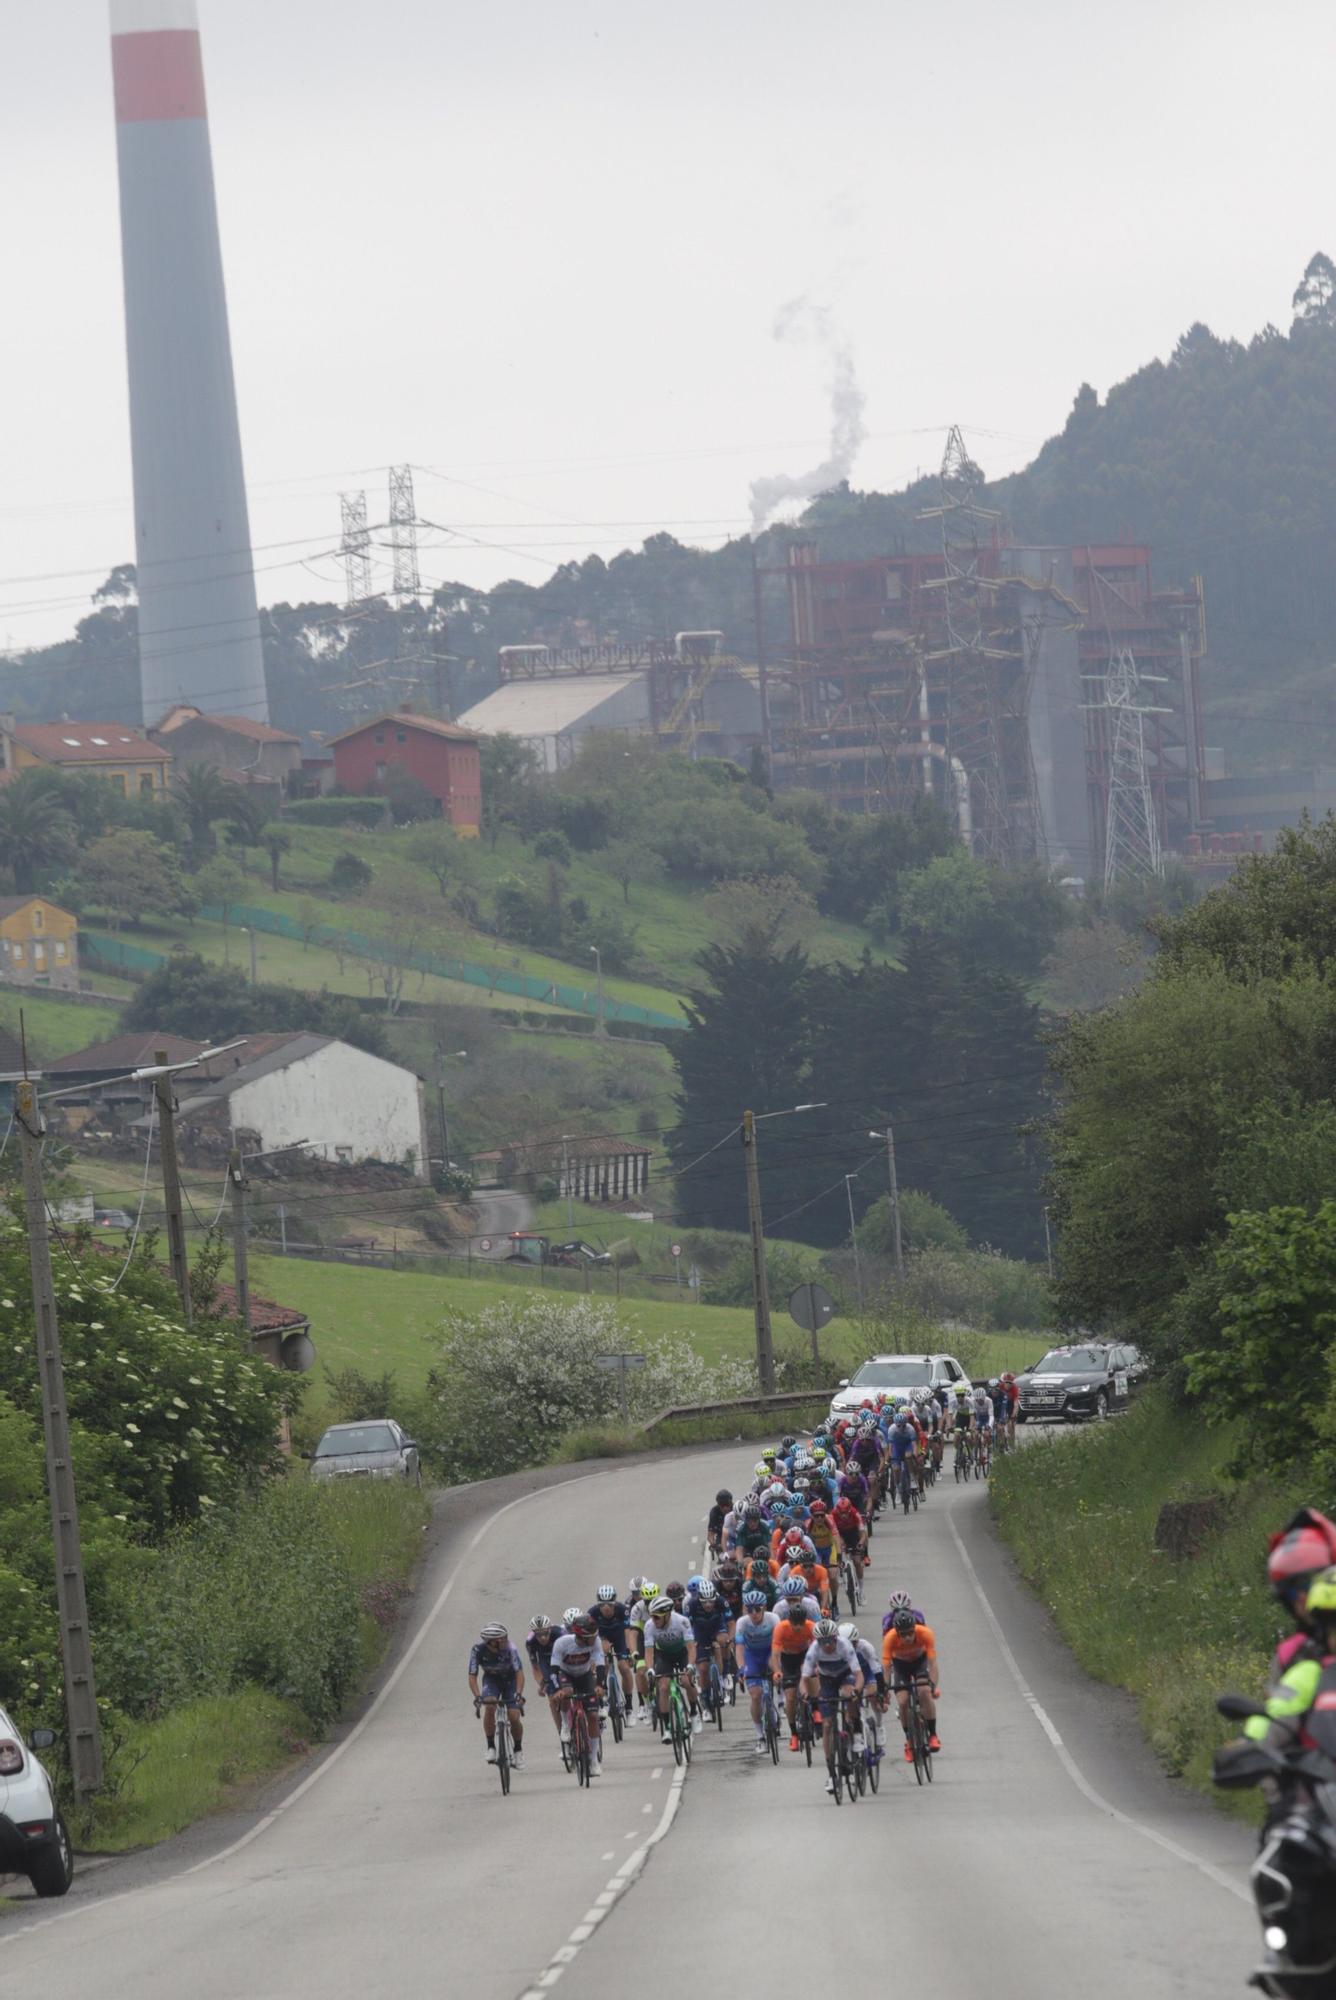 La etapa reina de la Vuelta Ciclista a Asturias, en imágenes